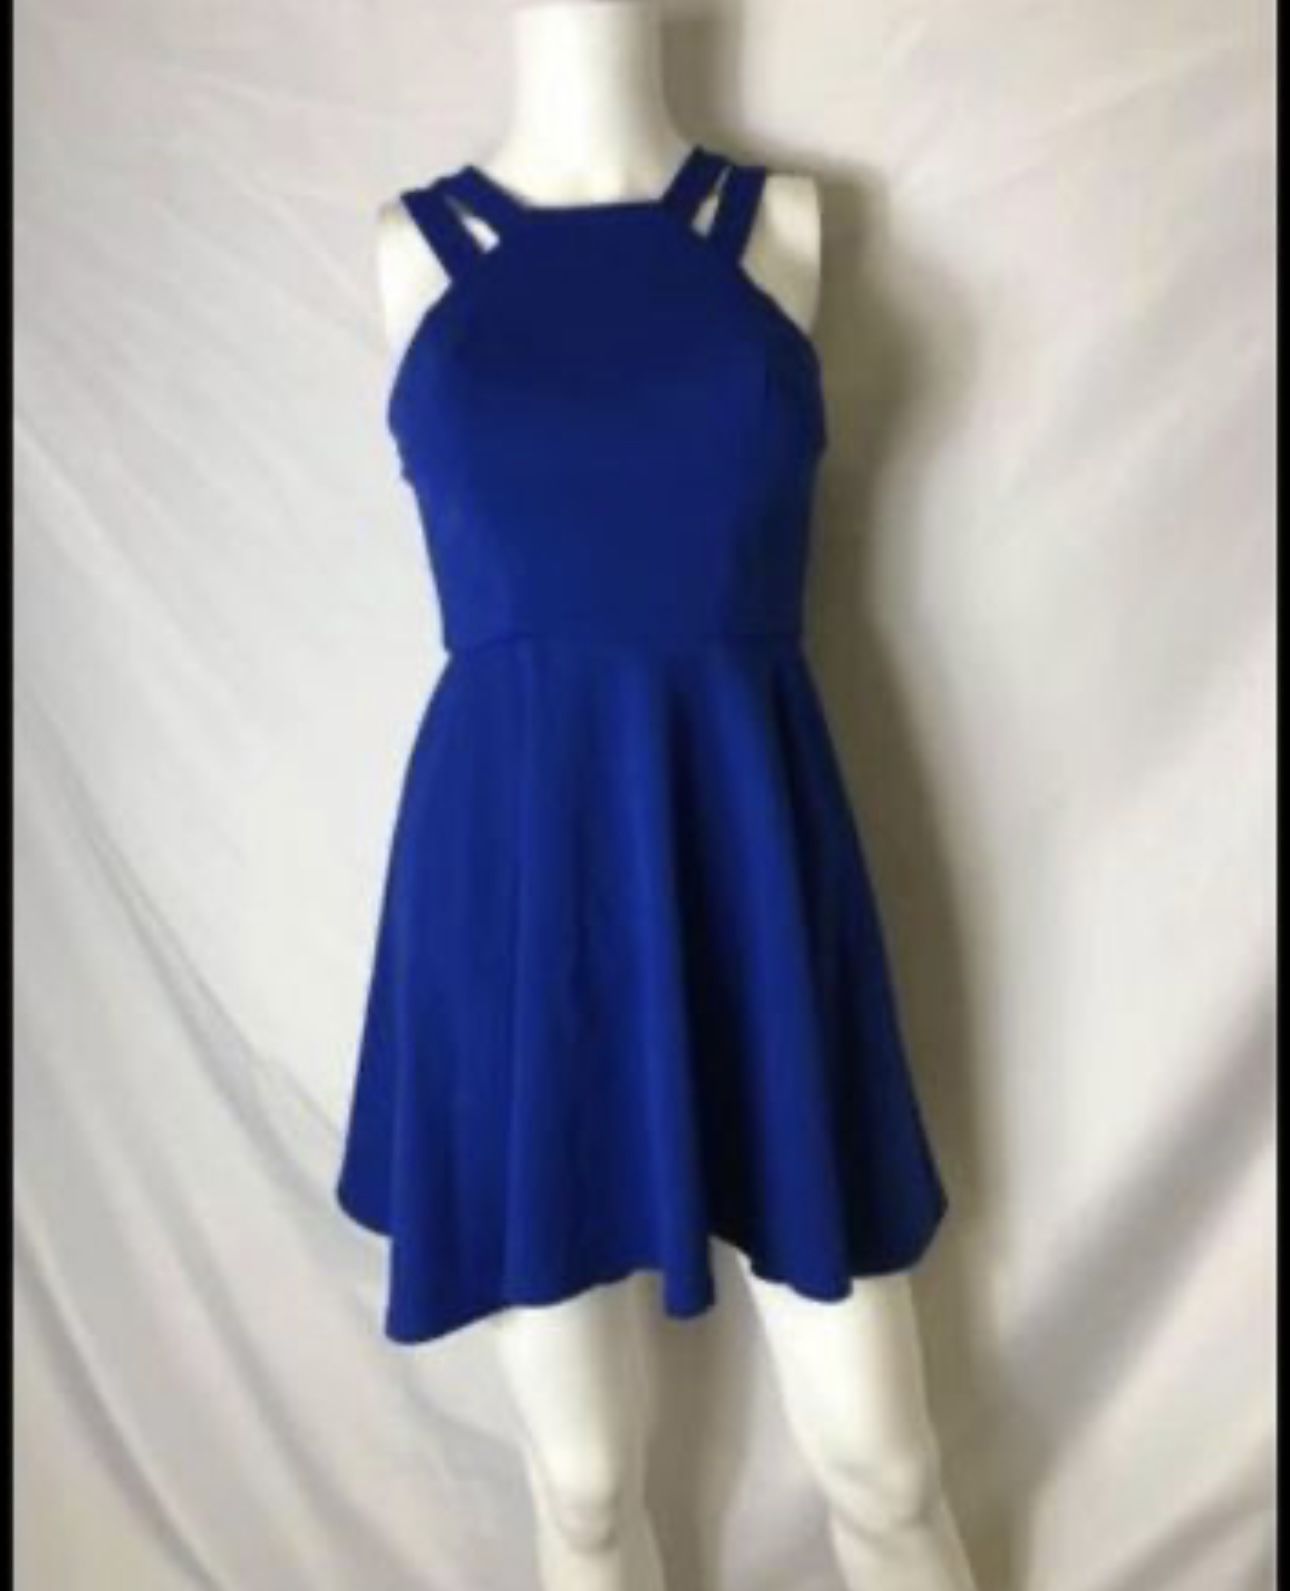 💙💙 Stunning B. Smart brand royal blue size 5 dress 💙💙